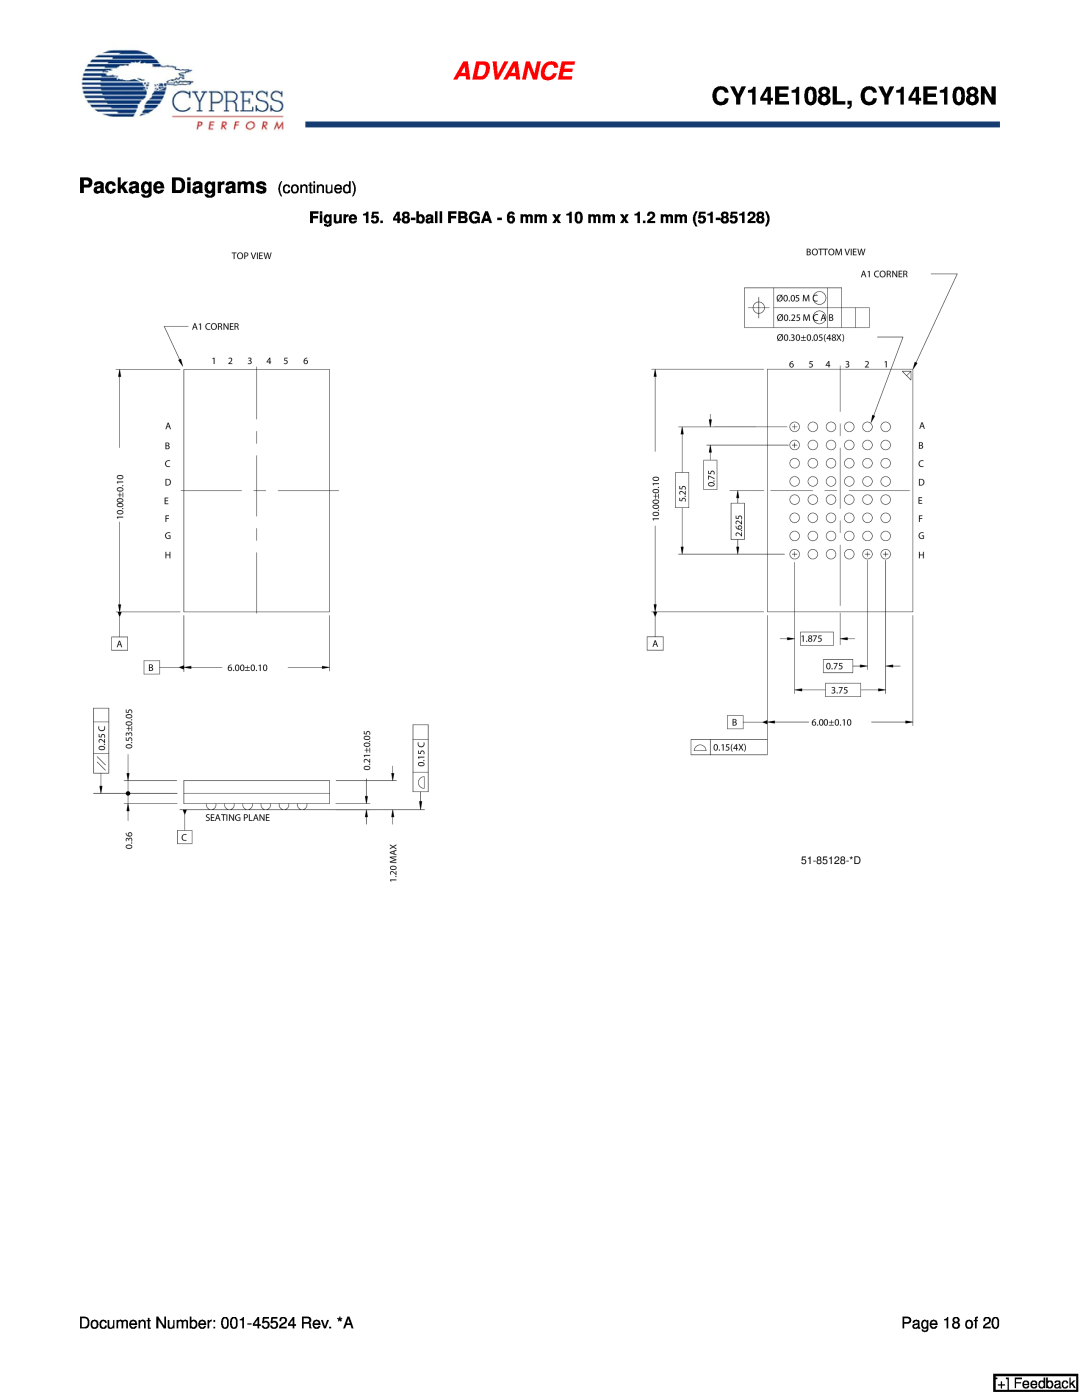 Cypress CY14B102N manual Package Diagrams continued, Advance, CY14E108L, CY14E108N, 48-ball FBGA - 6 mm x 10 mm x 1.2 mm 